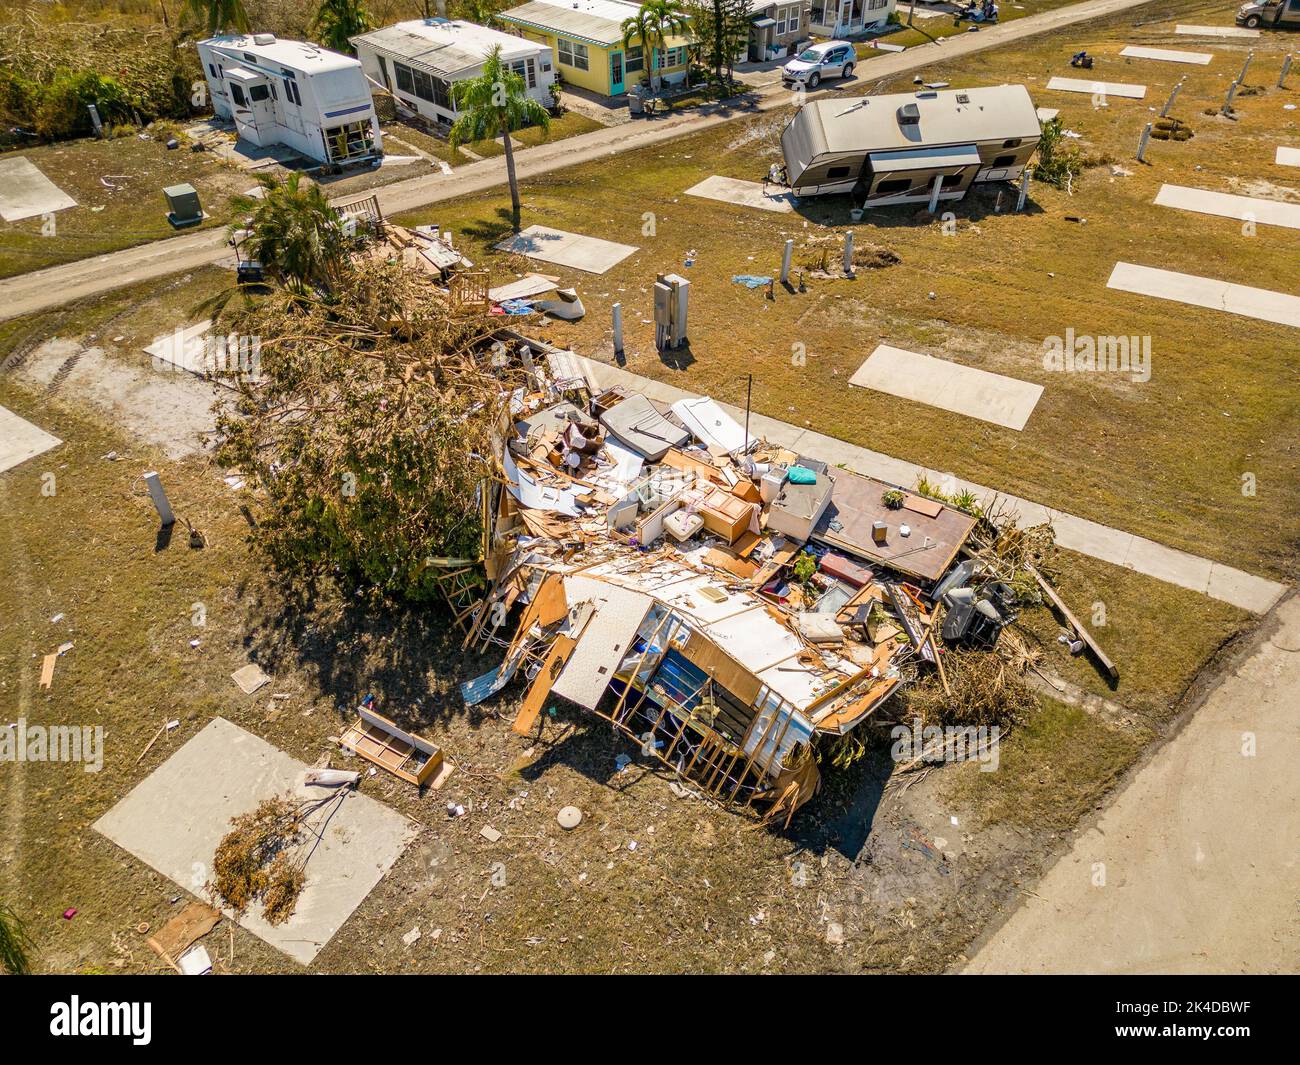 Foto aerea dei droni dei parcheggi per roulotte a Fort Myers, Florida, che hanno subito danni causati dall'uragano Ian Foto Stock